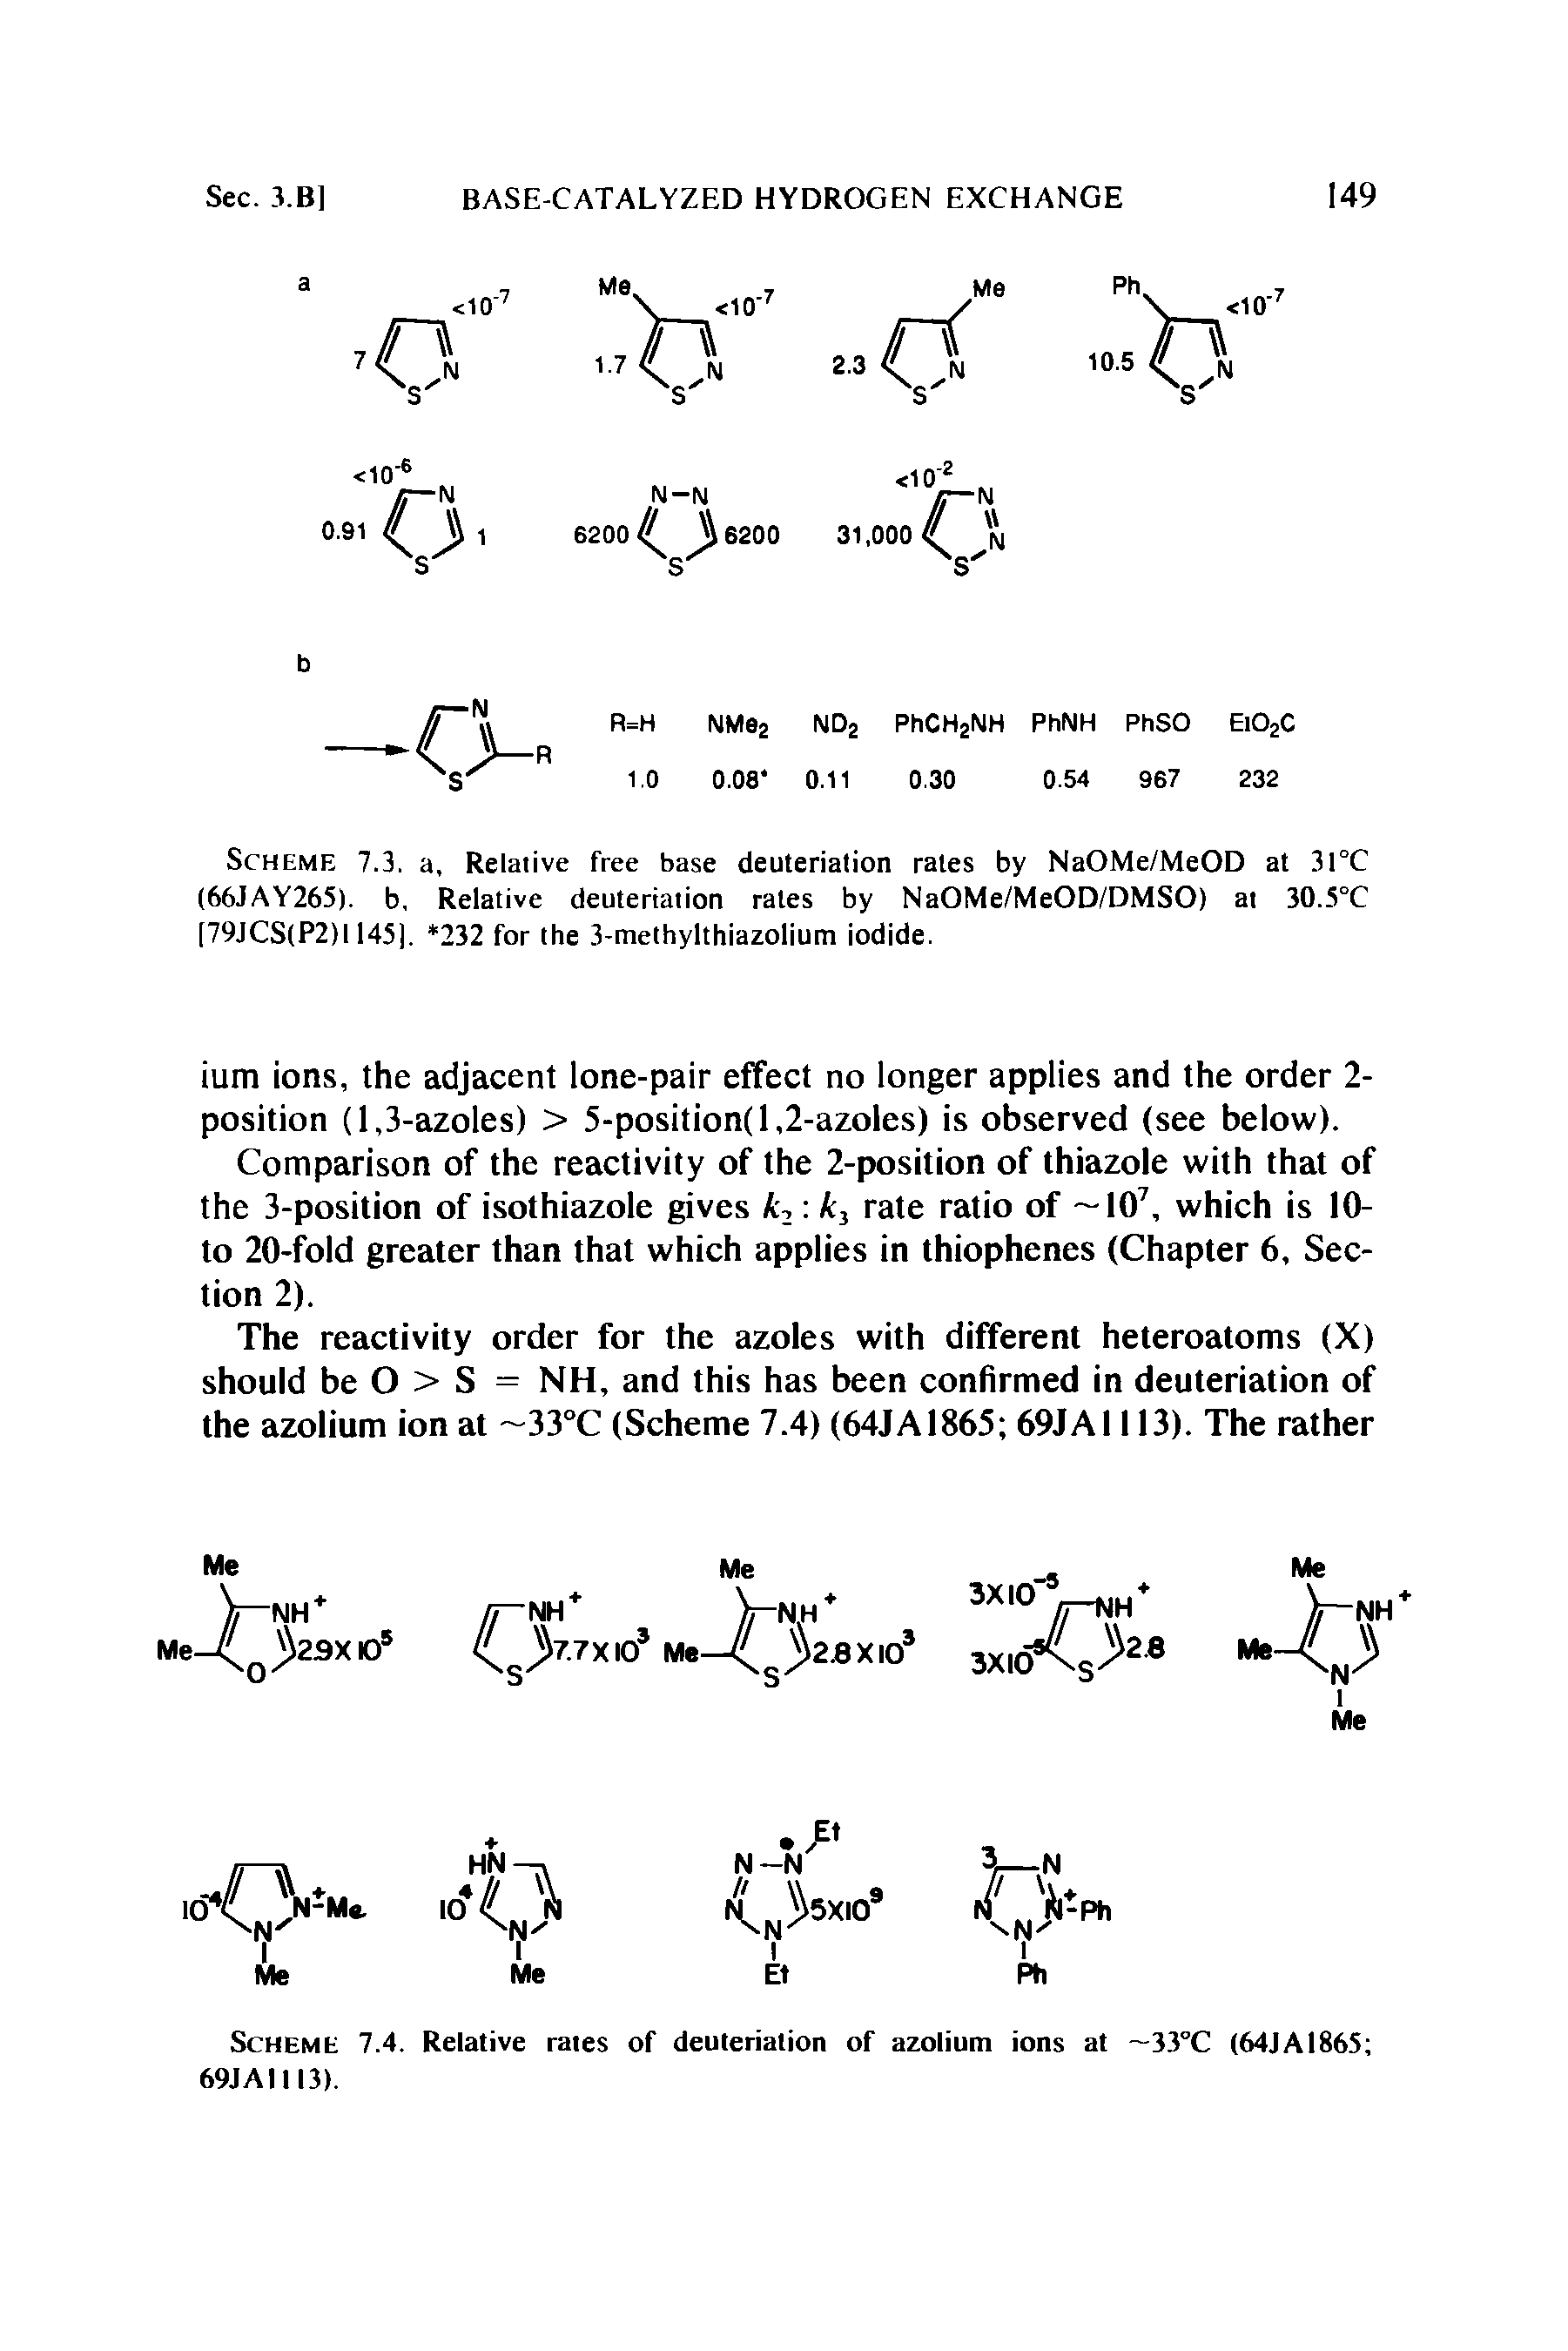 Scheme 7.4. Relative rates of deuteriation of azolium ions at 33°C (64JA1865 69JAI113).